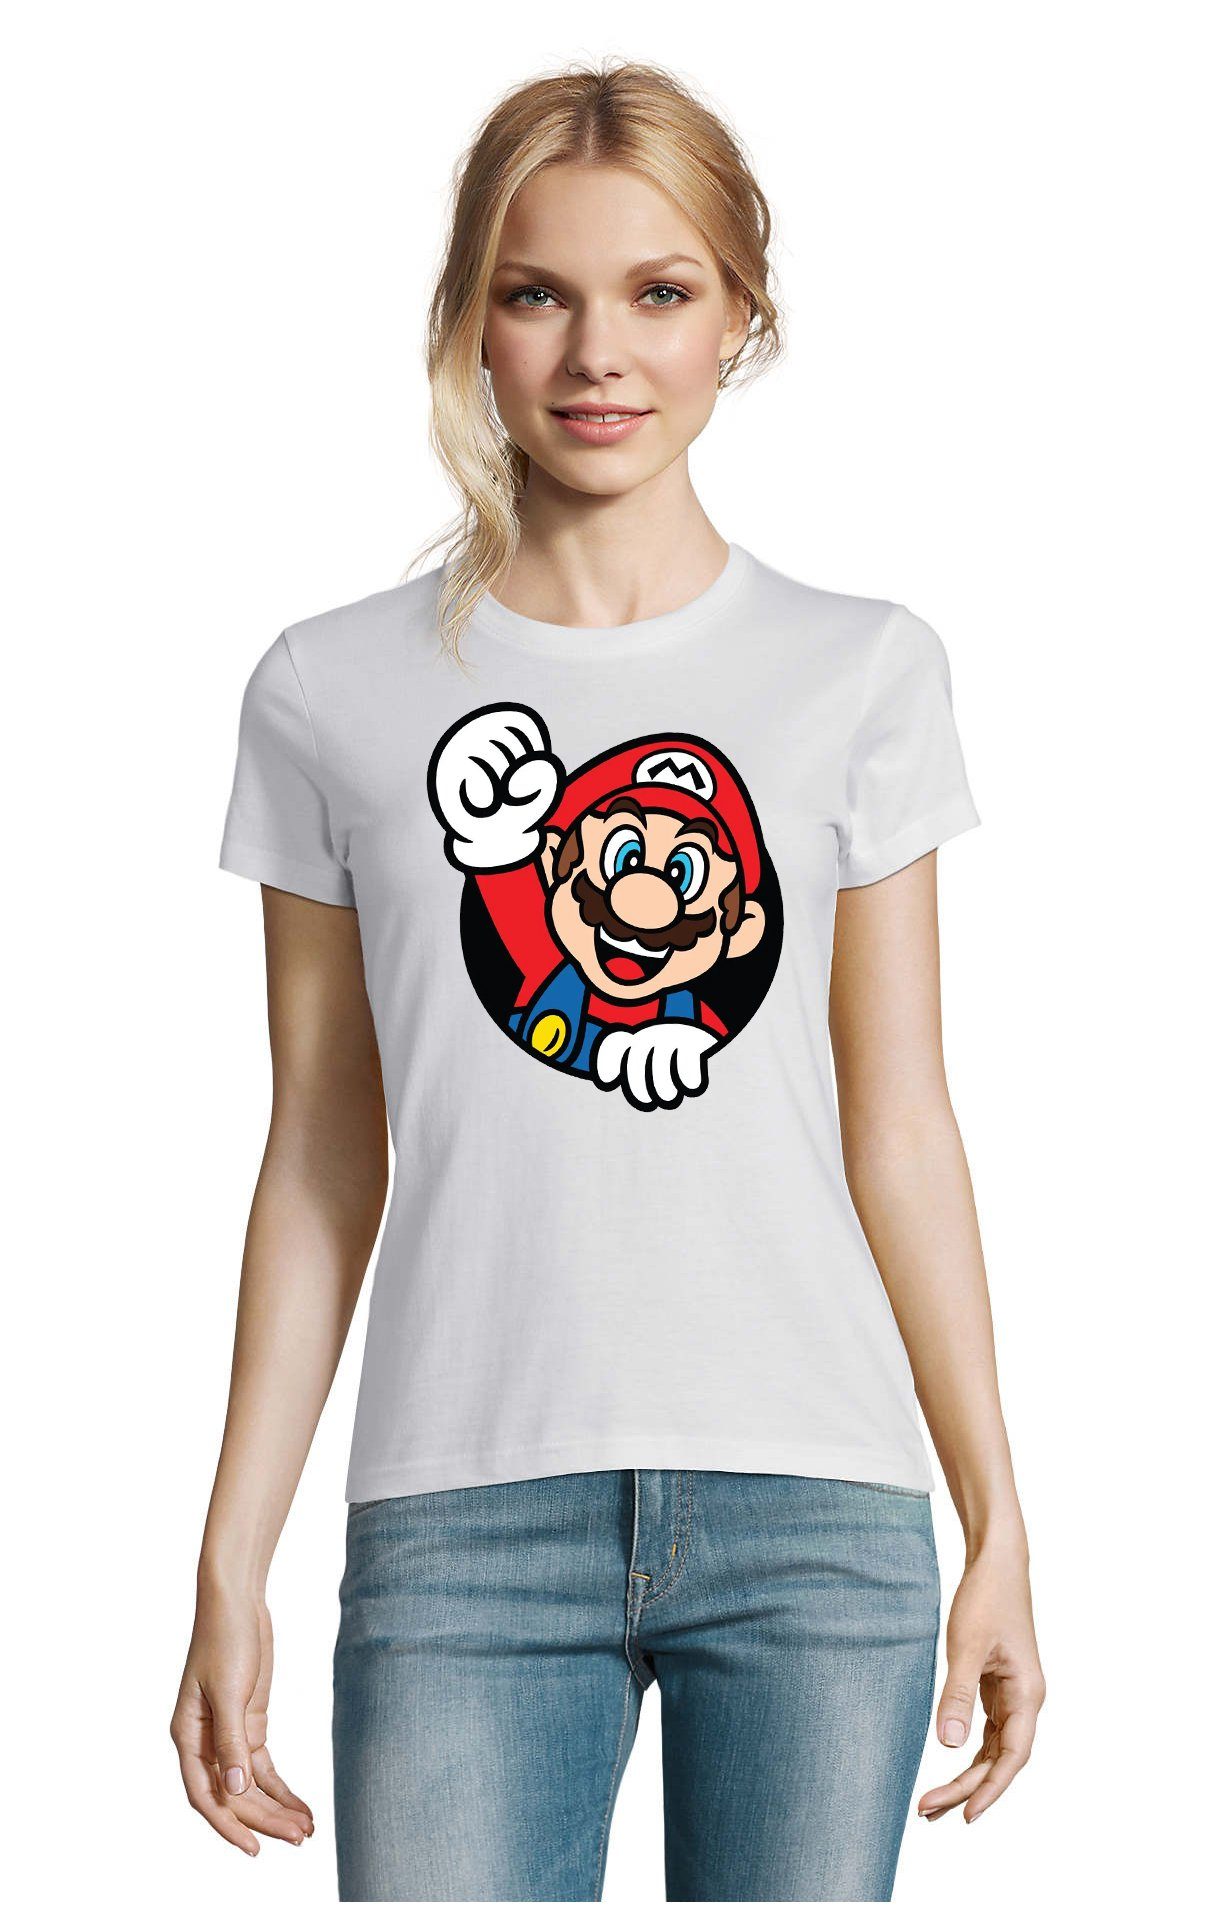 Blondie & Brownie T-Shirt Spiel Damen Super Nintendo Nerd Weiss Gaming Faust Mario Konsole